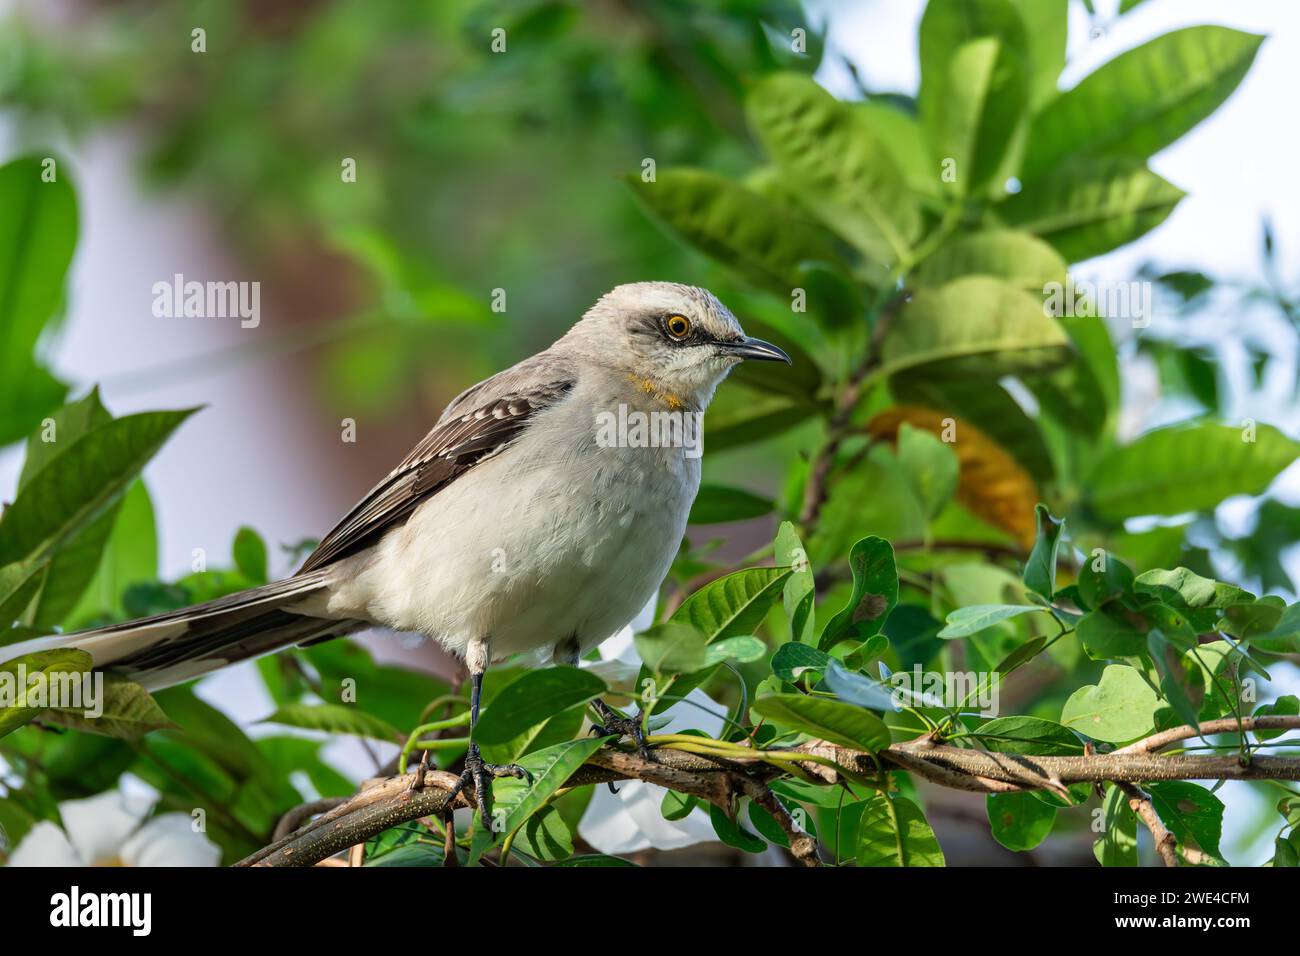 oiseau moqueur tropical (Mimus gilvus), oiseau reproducteur résident. Barichara, département de Santander. Faune et observation des oiseaux en Colombie Banque D'Images